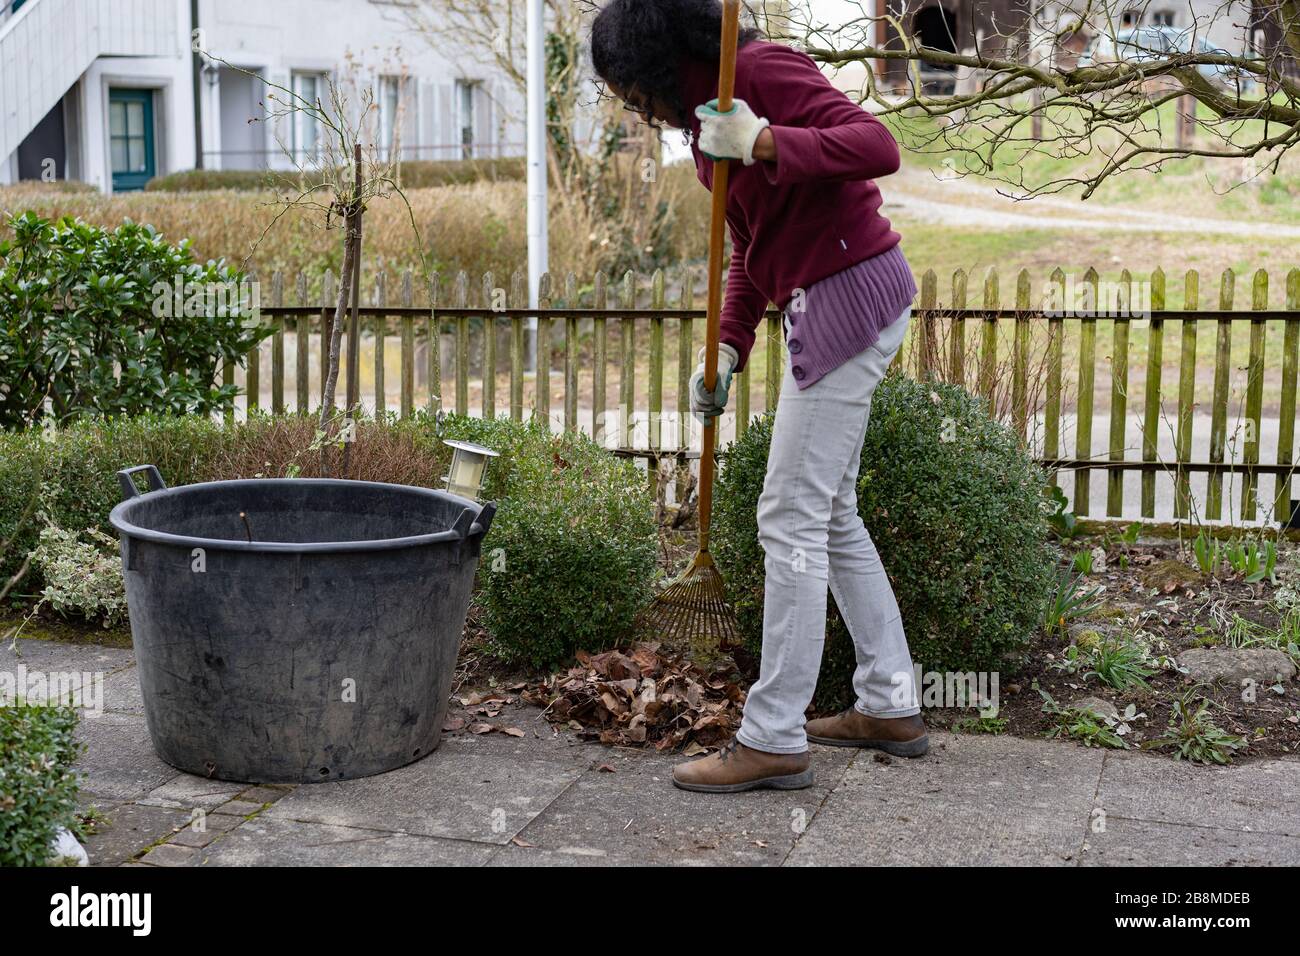 Giovane donna è rastrellare foglie con rastrello giardino, pulizia sentiero e aiuole in primavera in giardino. Ritratto di donna giardinaggio. Foto Stock